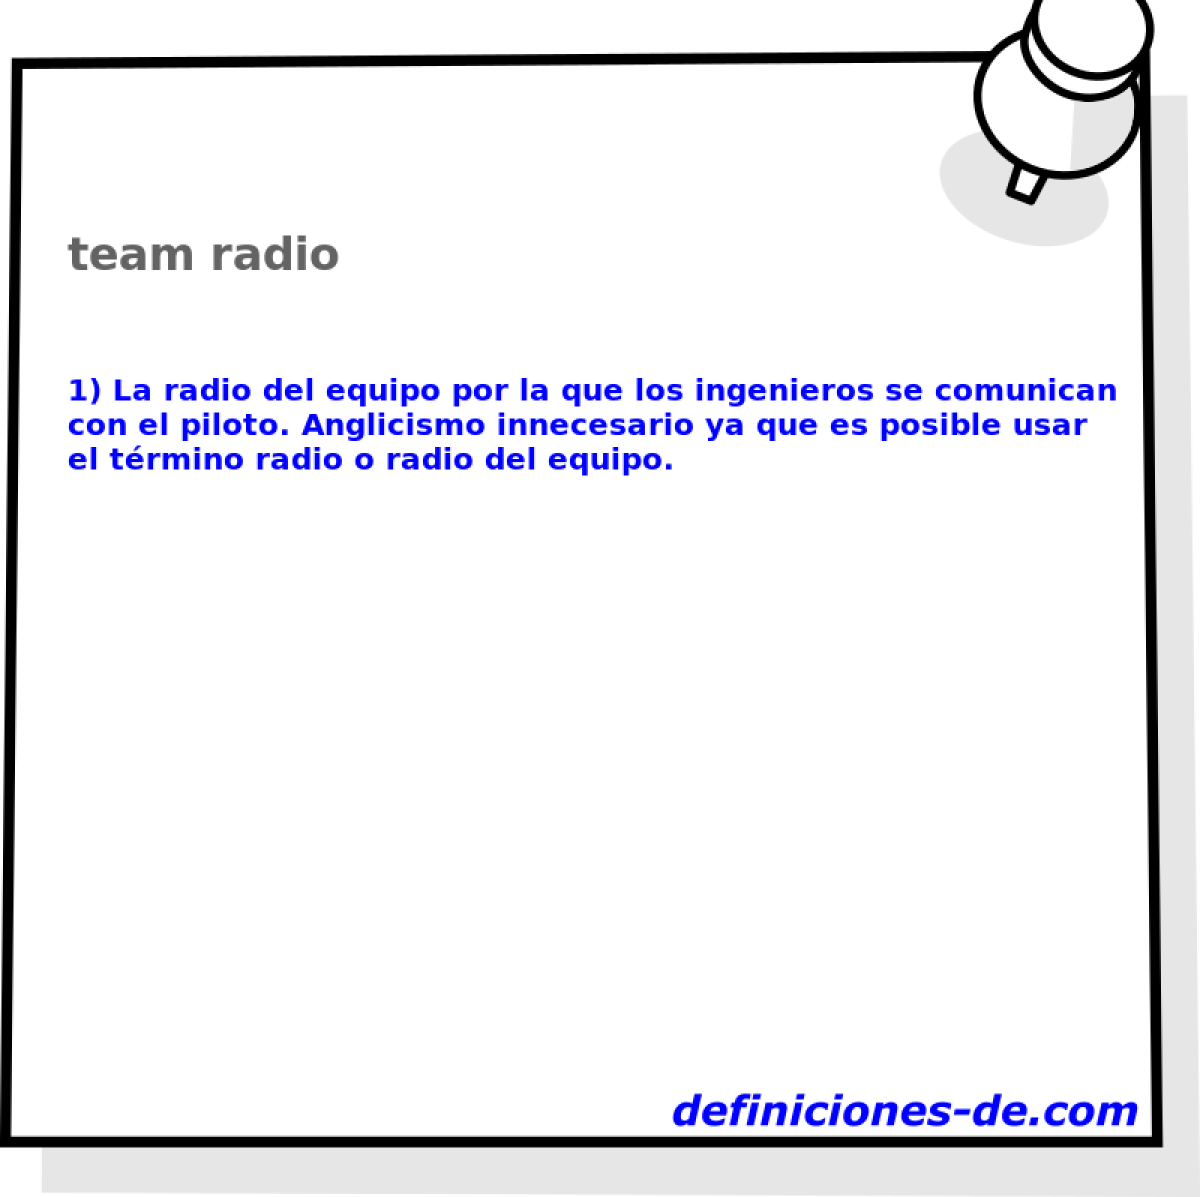 team radio 